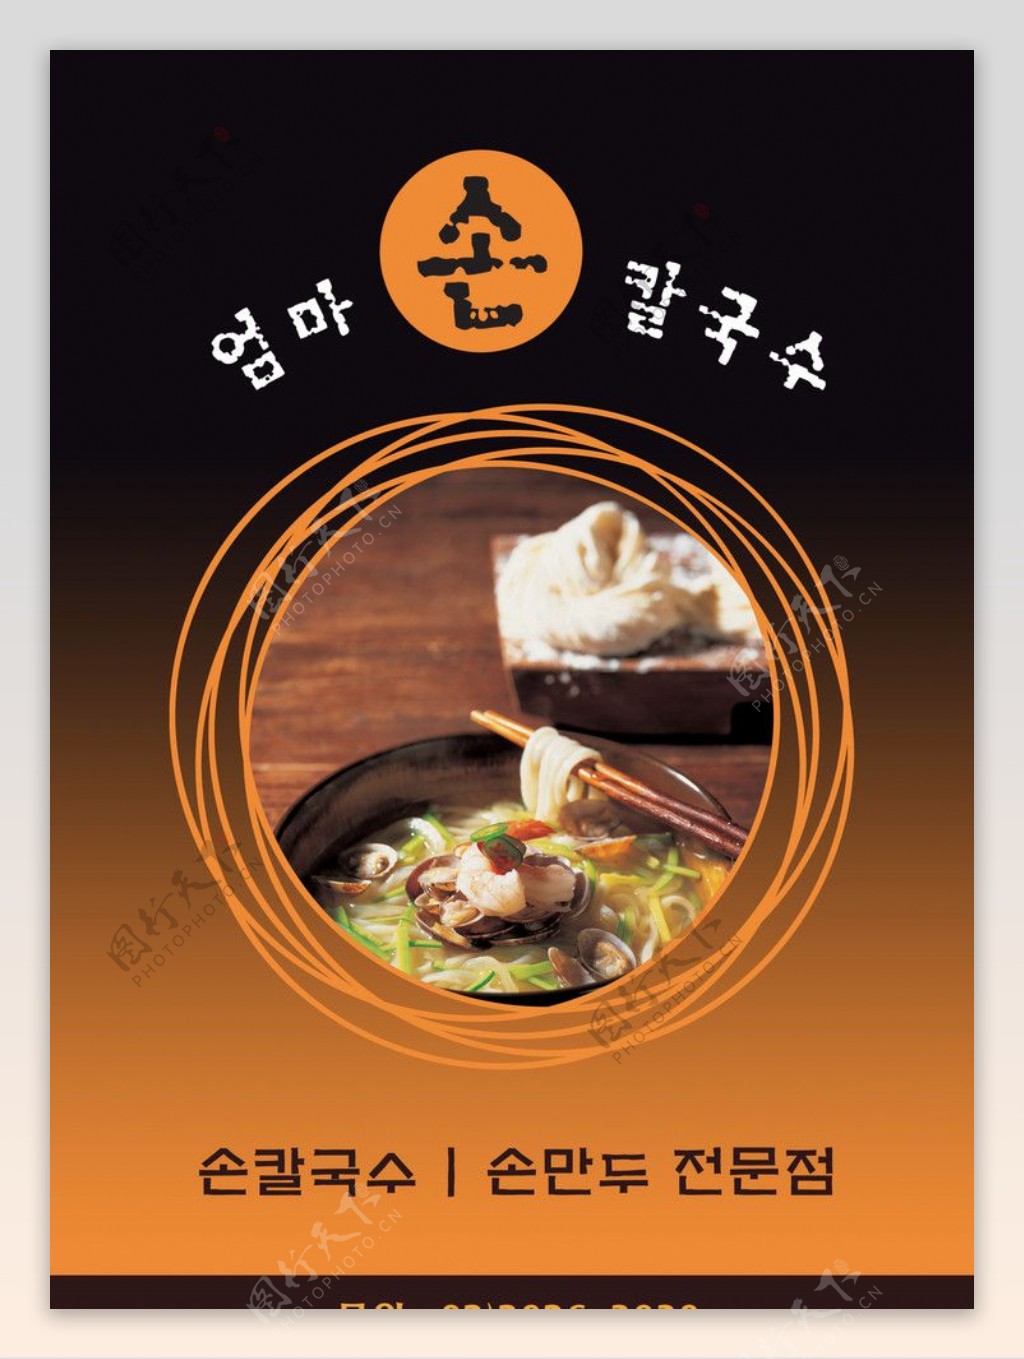 韩国料理海鲜面图片